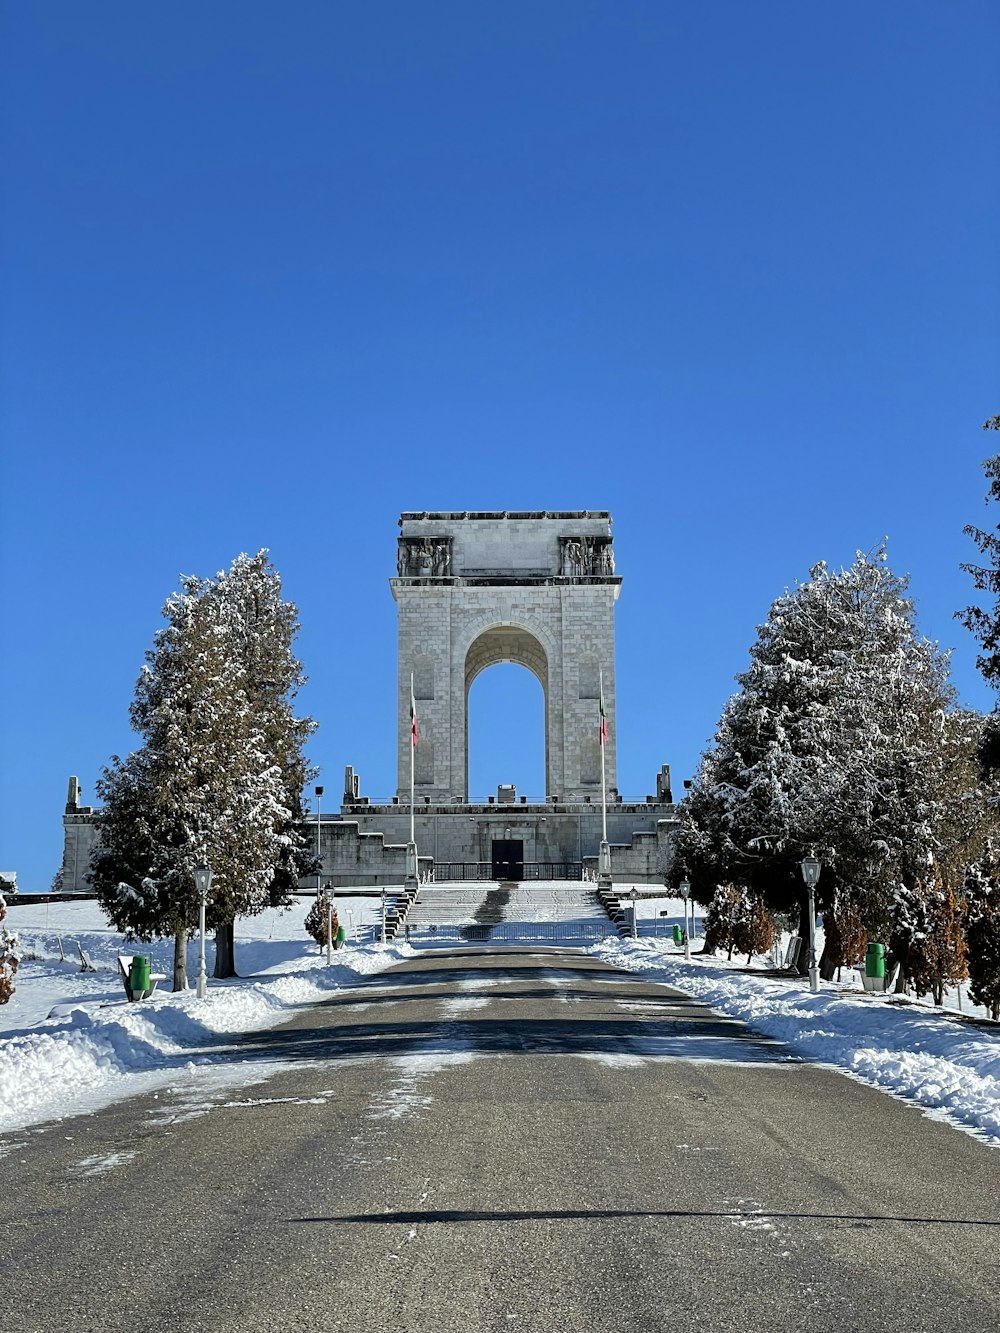 Un gran monumento en medio de un parque nevado